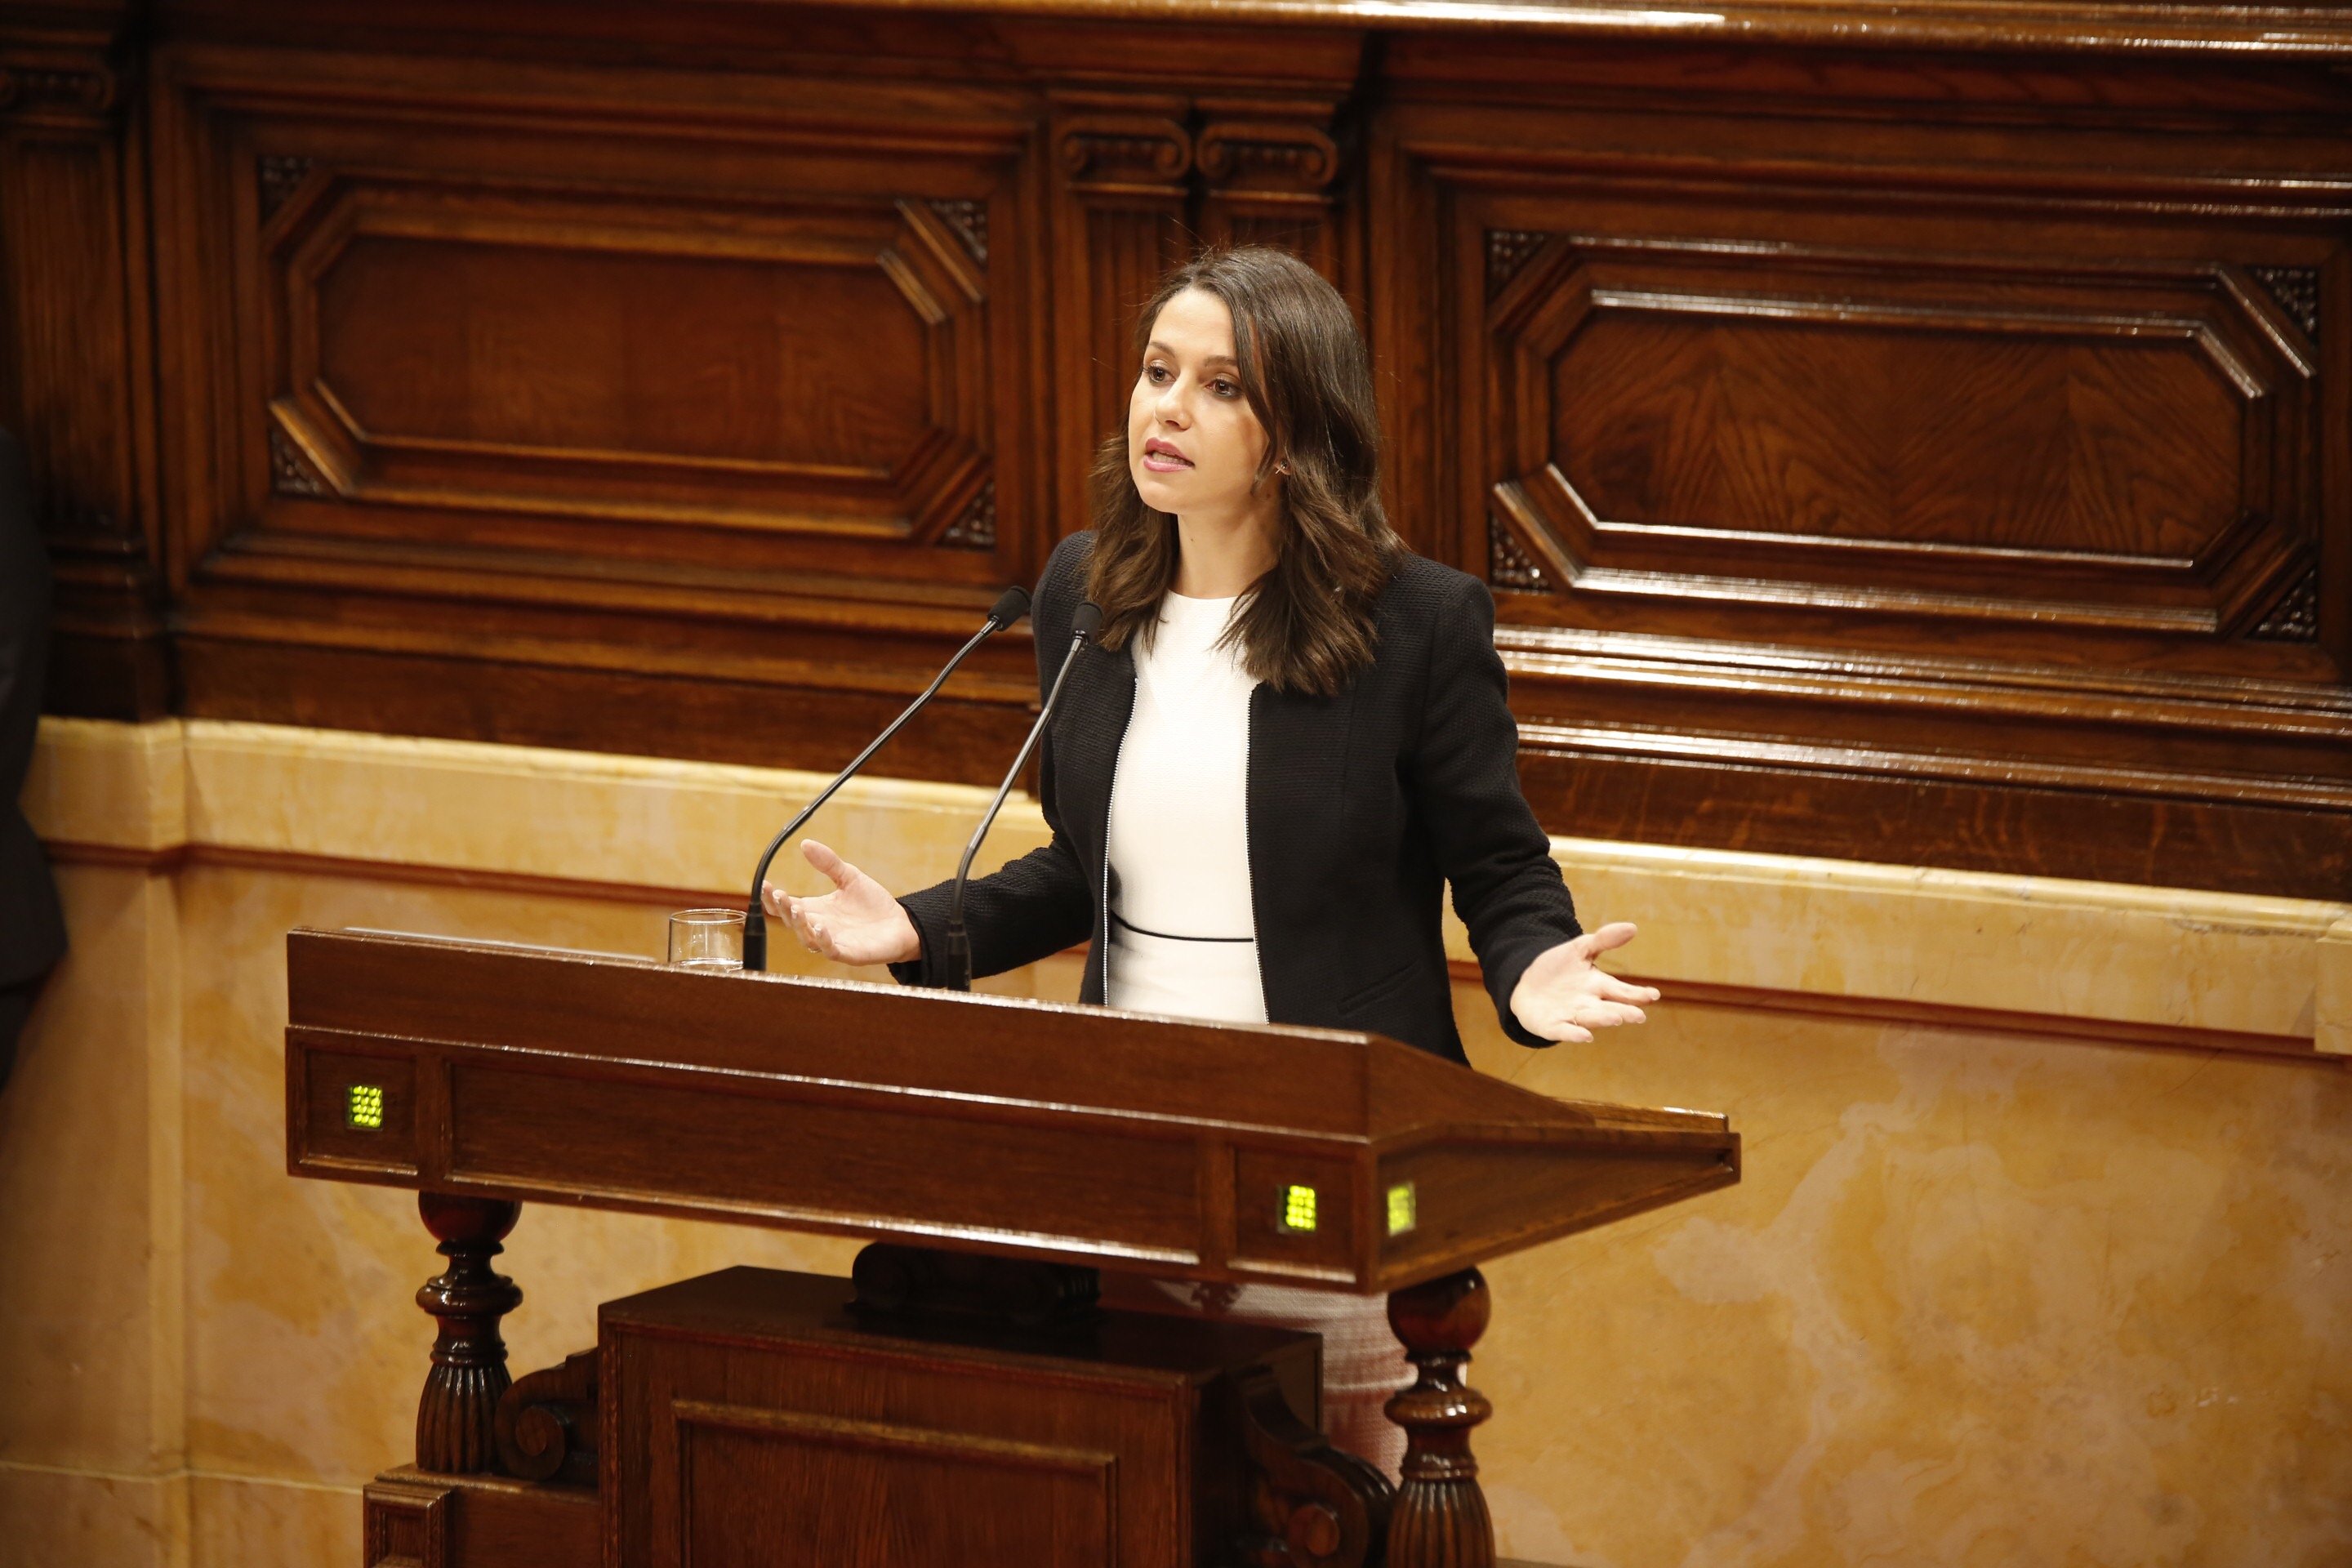 C's demana que el Parlament exigeixi la dimissió de Junqueras i eleccions immediates